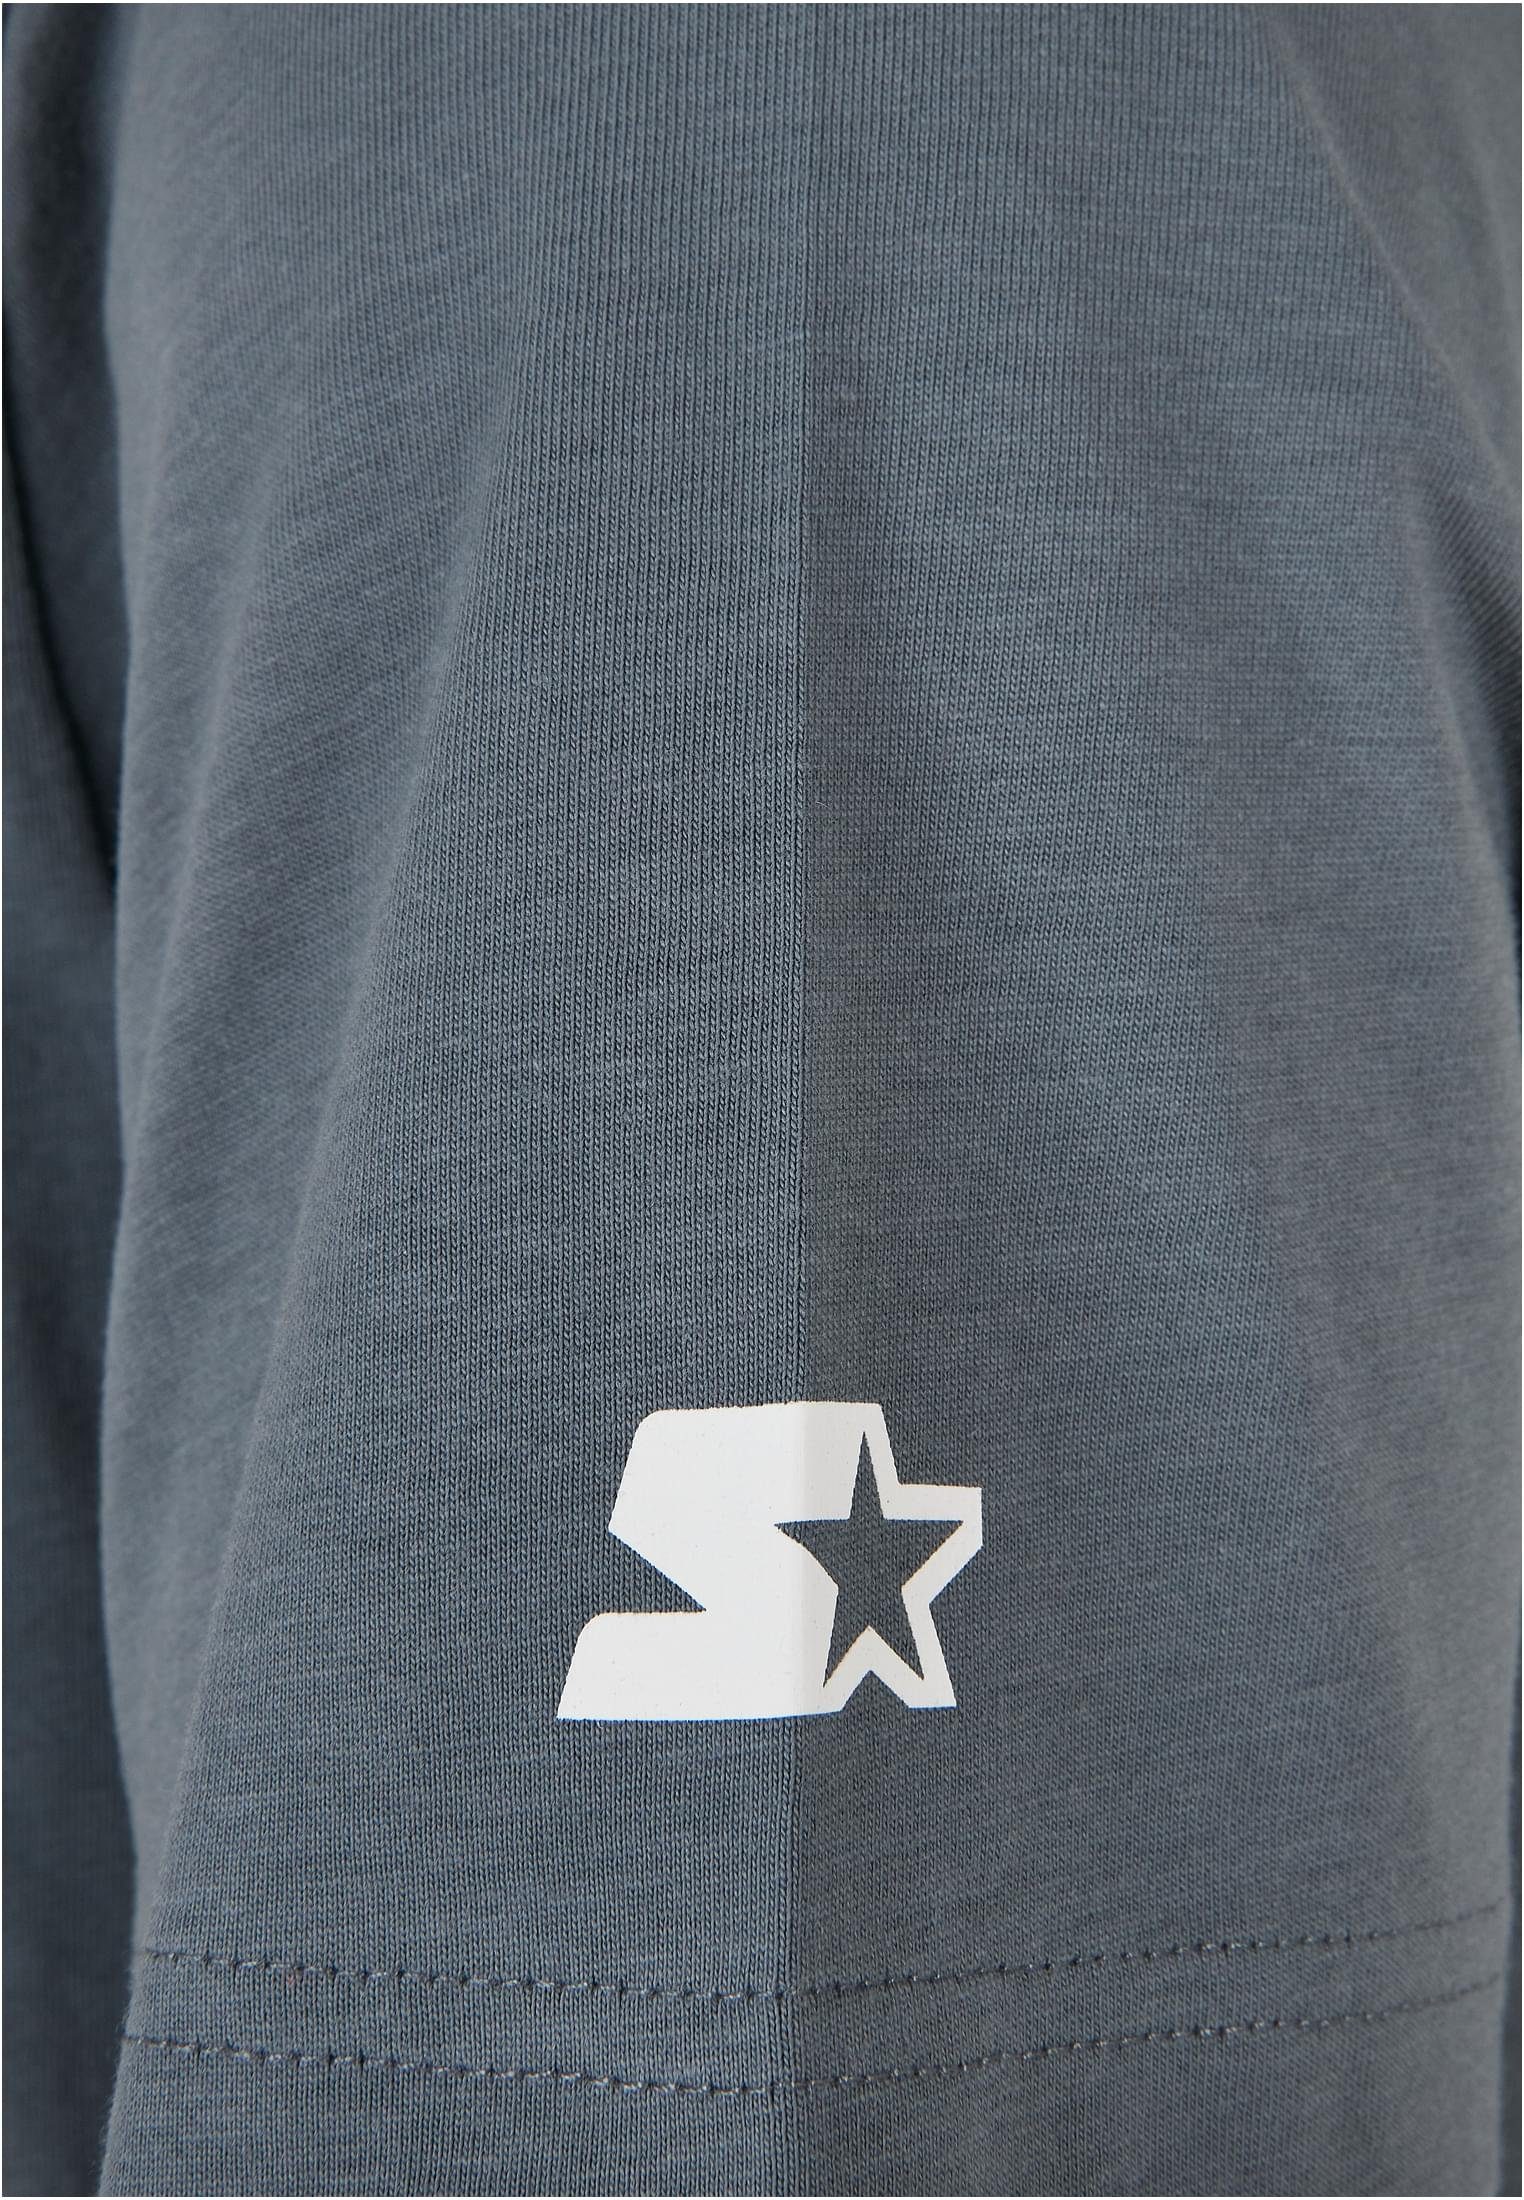 Tee (1-tlg) T-Shirt Logo Starter heavymetal Starter Herren